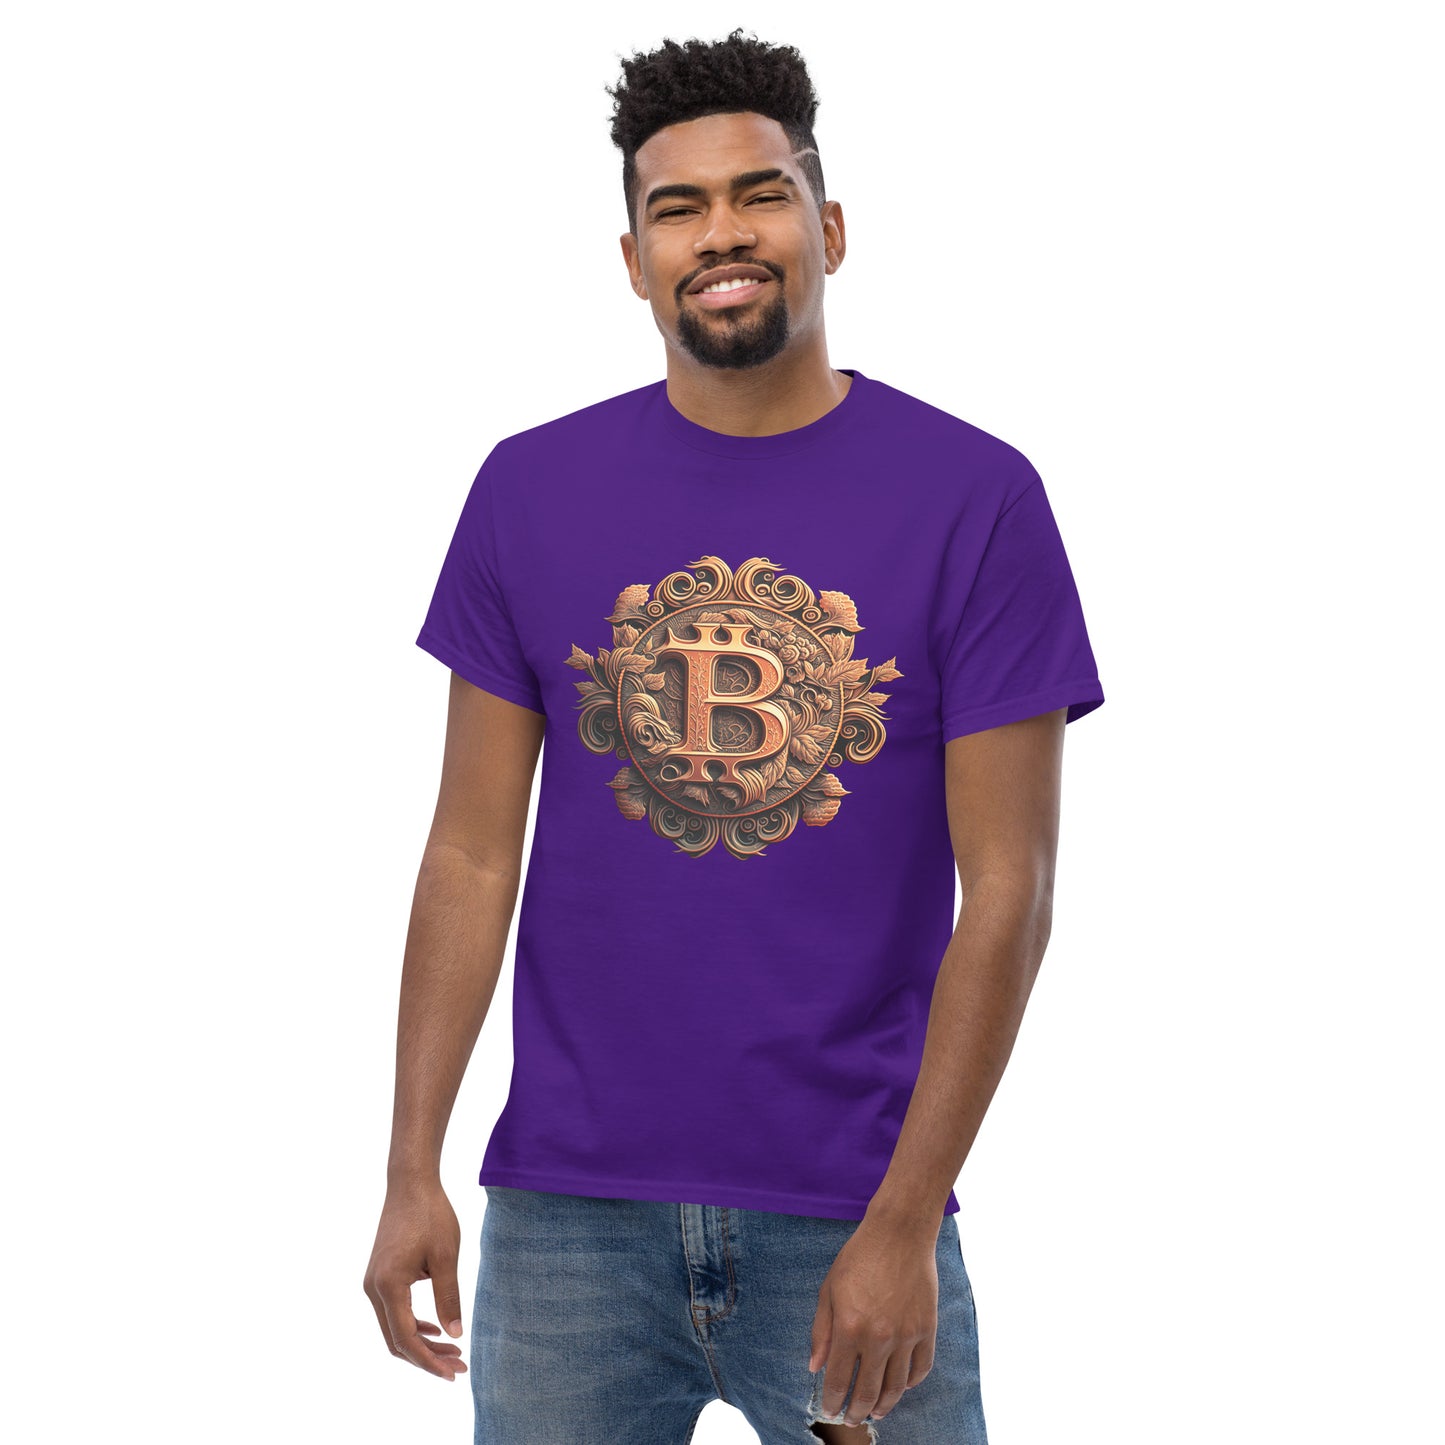 Gingerly's Golden Bitcoin T-Shirt